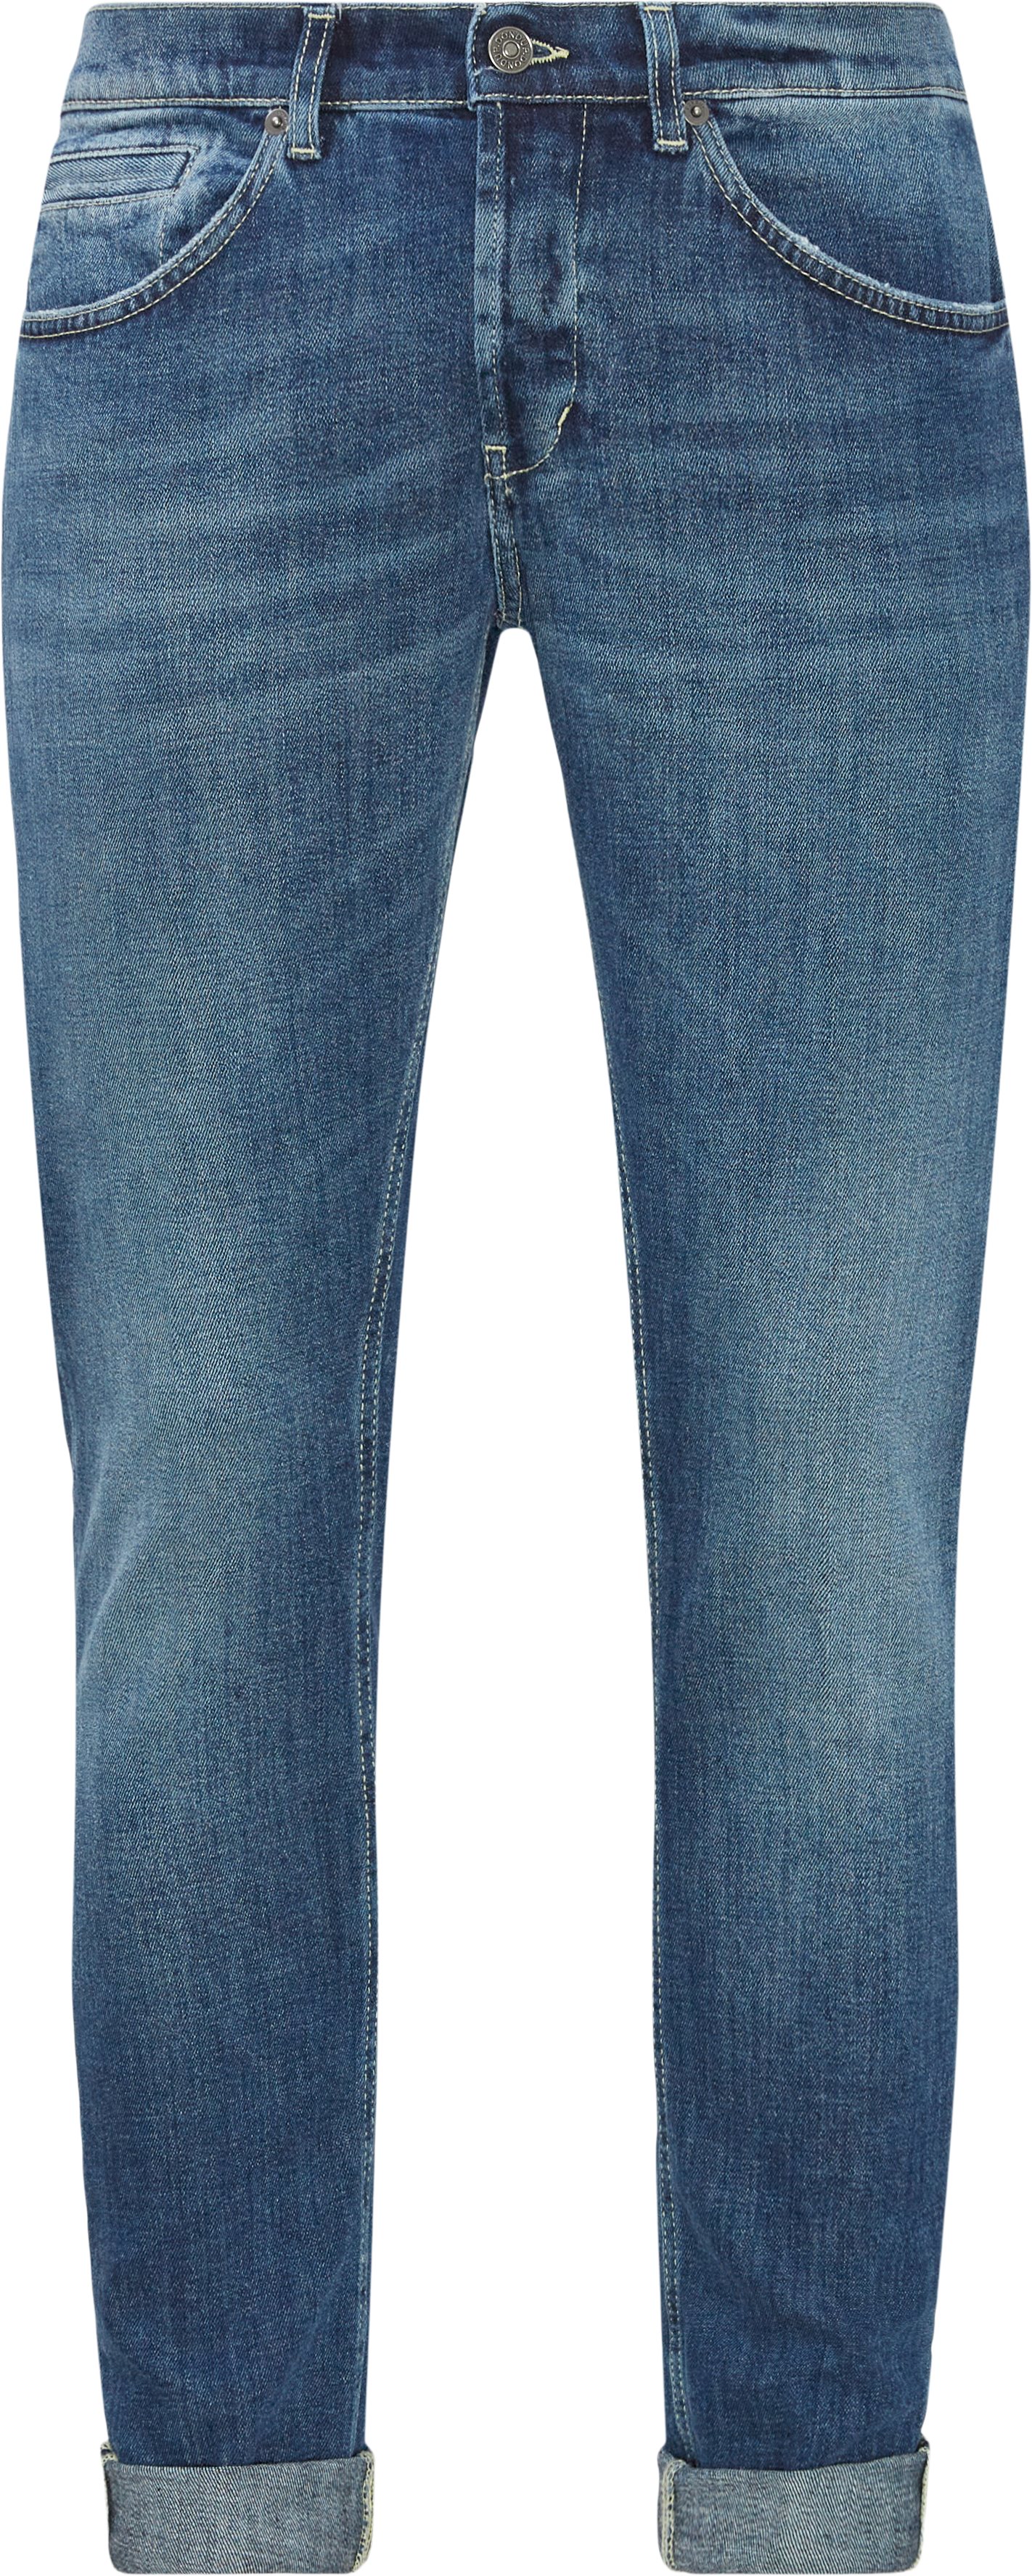 Jeans - Slim fit - Blå